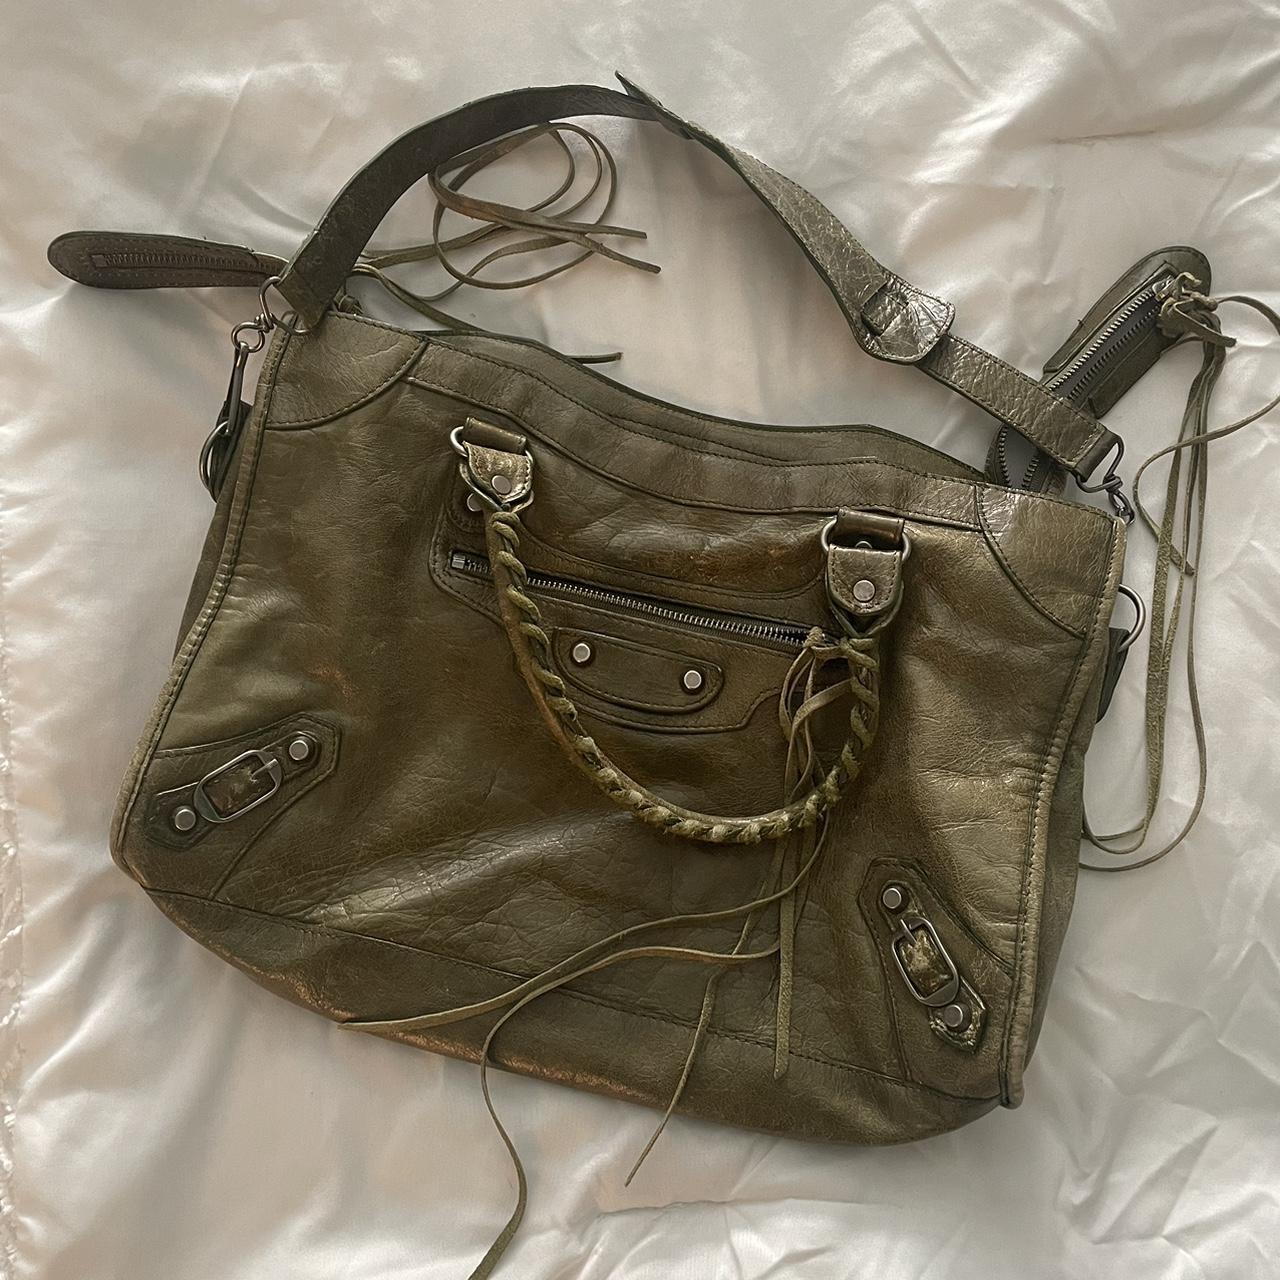 Balenciaga Khaki Nylon and Leather Mini Covered Hardware City Bag Balenciaga   TLC